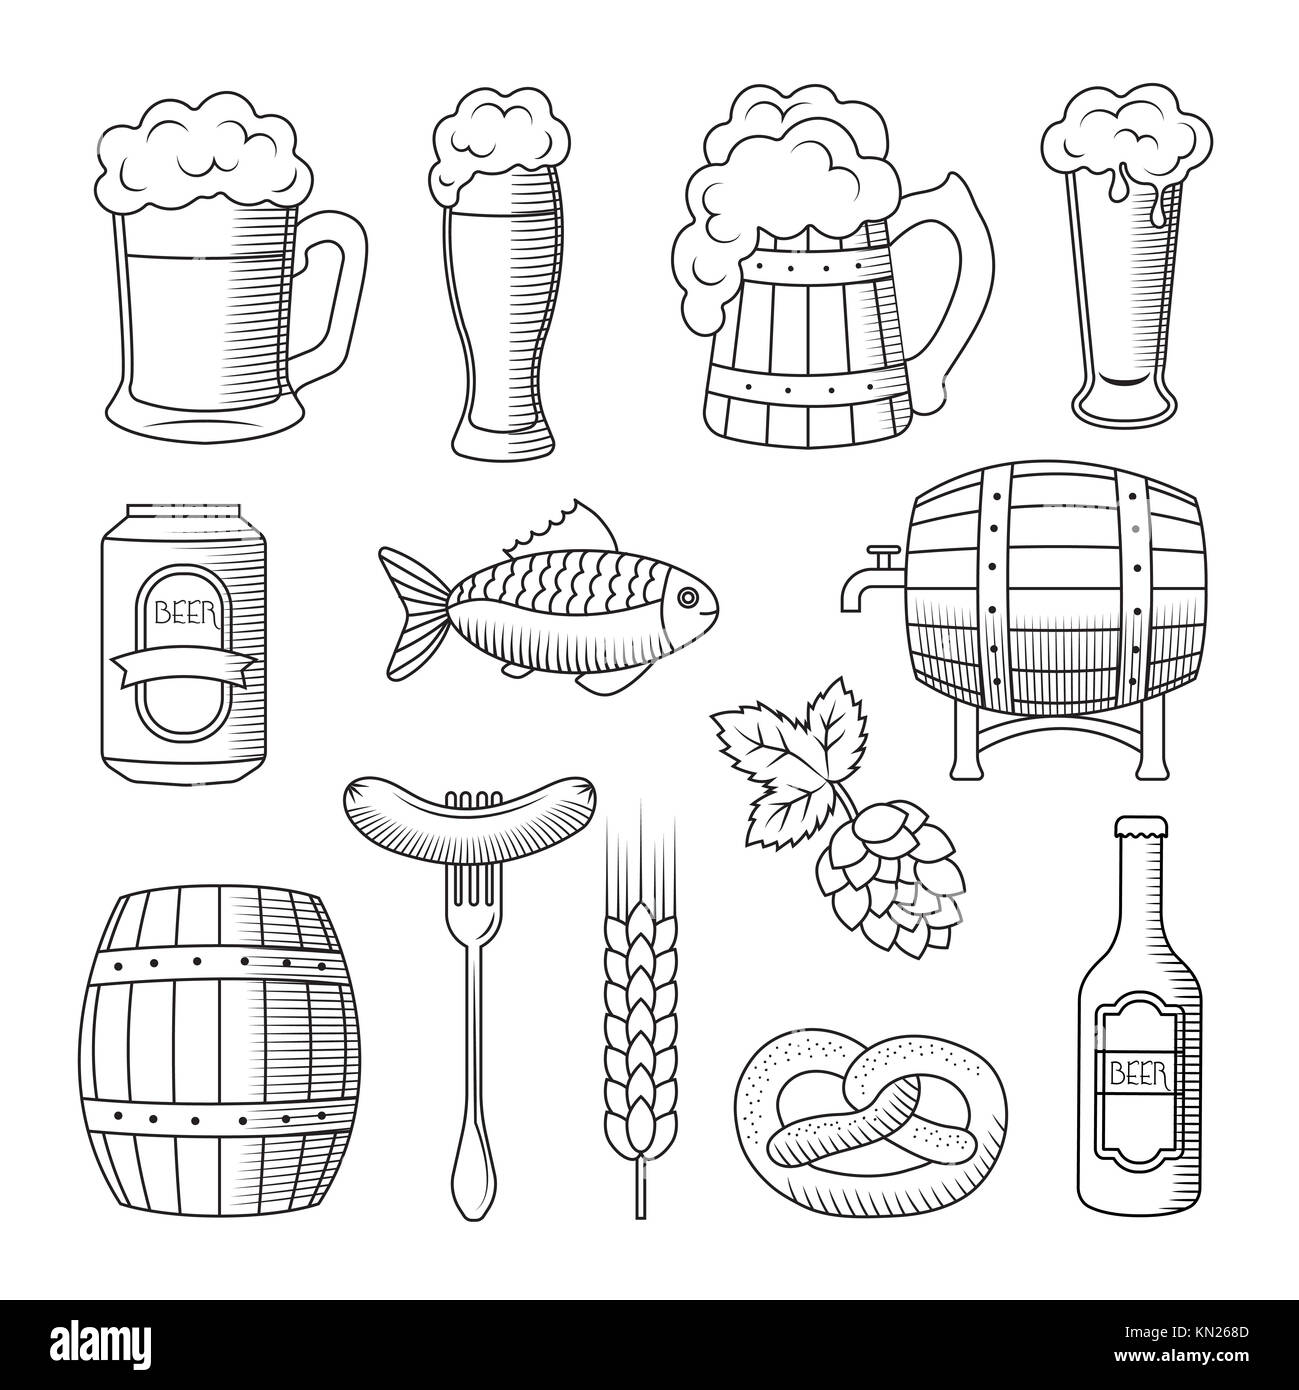 Un ensemble d'icônes de l'Oktoberfest. illustration dans le style cartoon, isolé sur fond blanc Banque D'Images